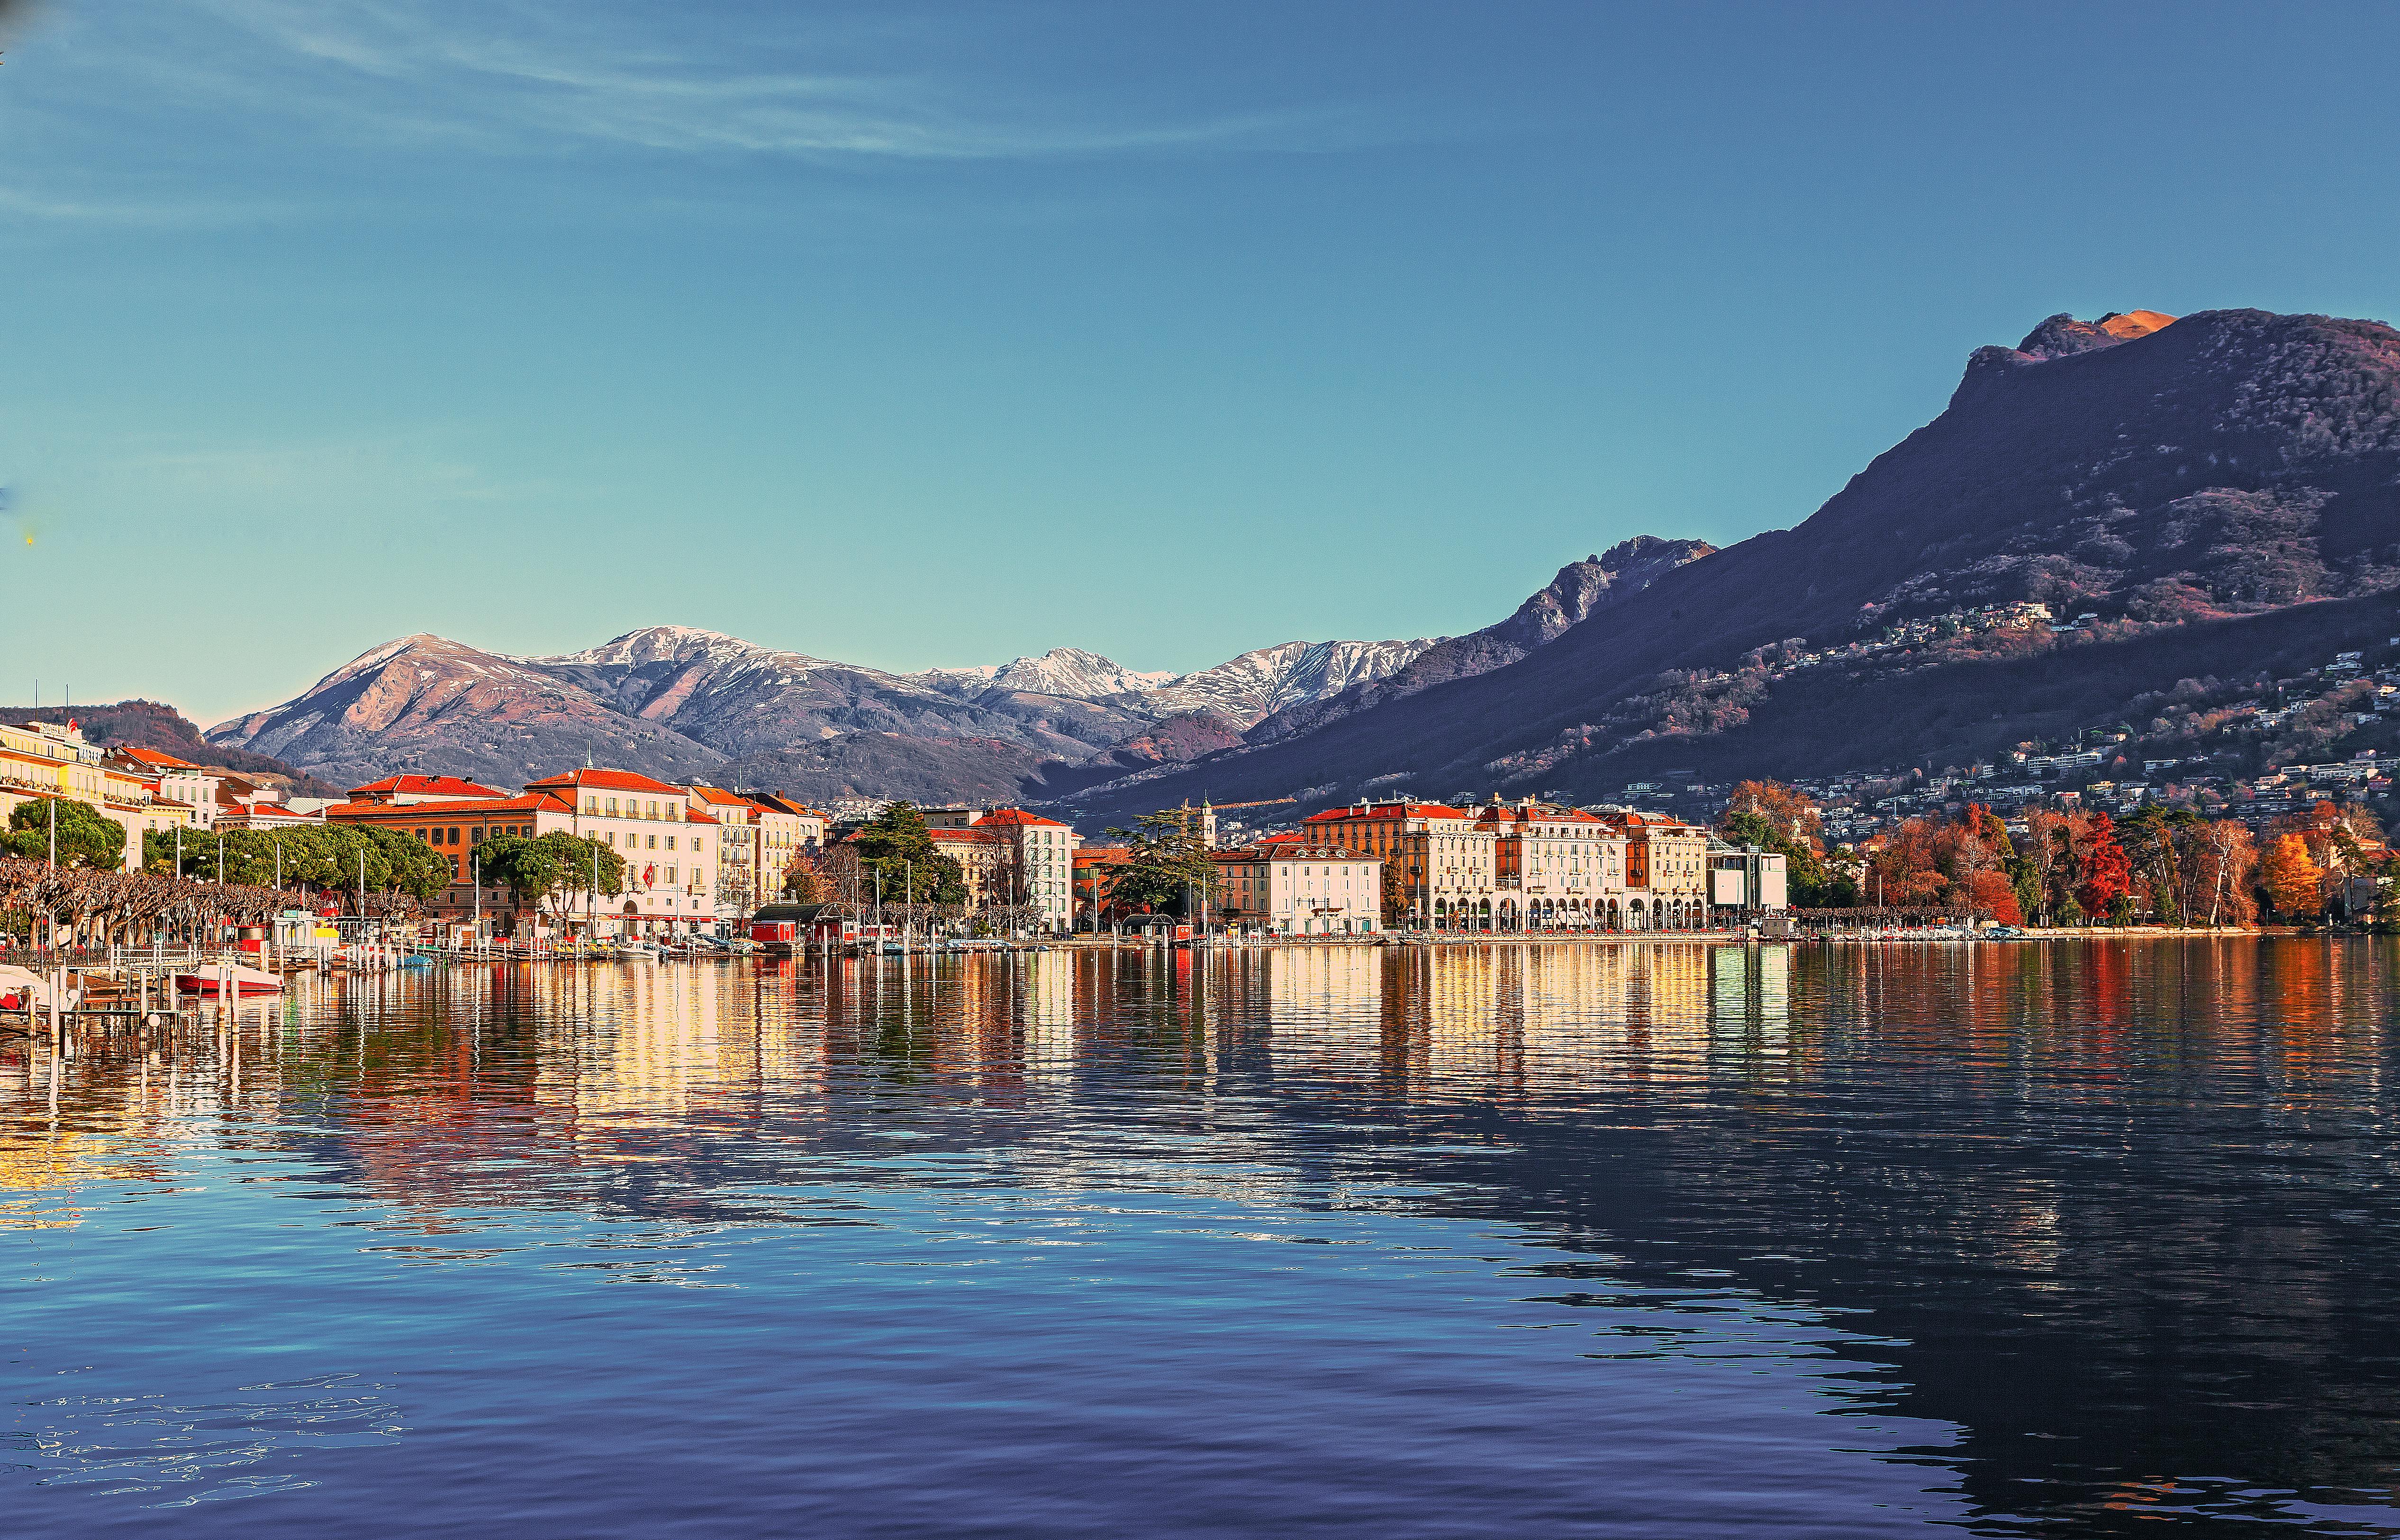 Hồ Thụy Sĩ Hoàng Hôn Lai - Ảnh miễn phí trên Pixabay - Pixabay